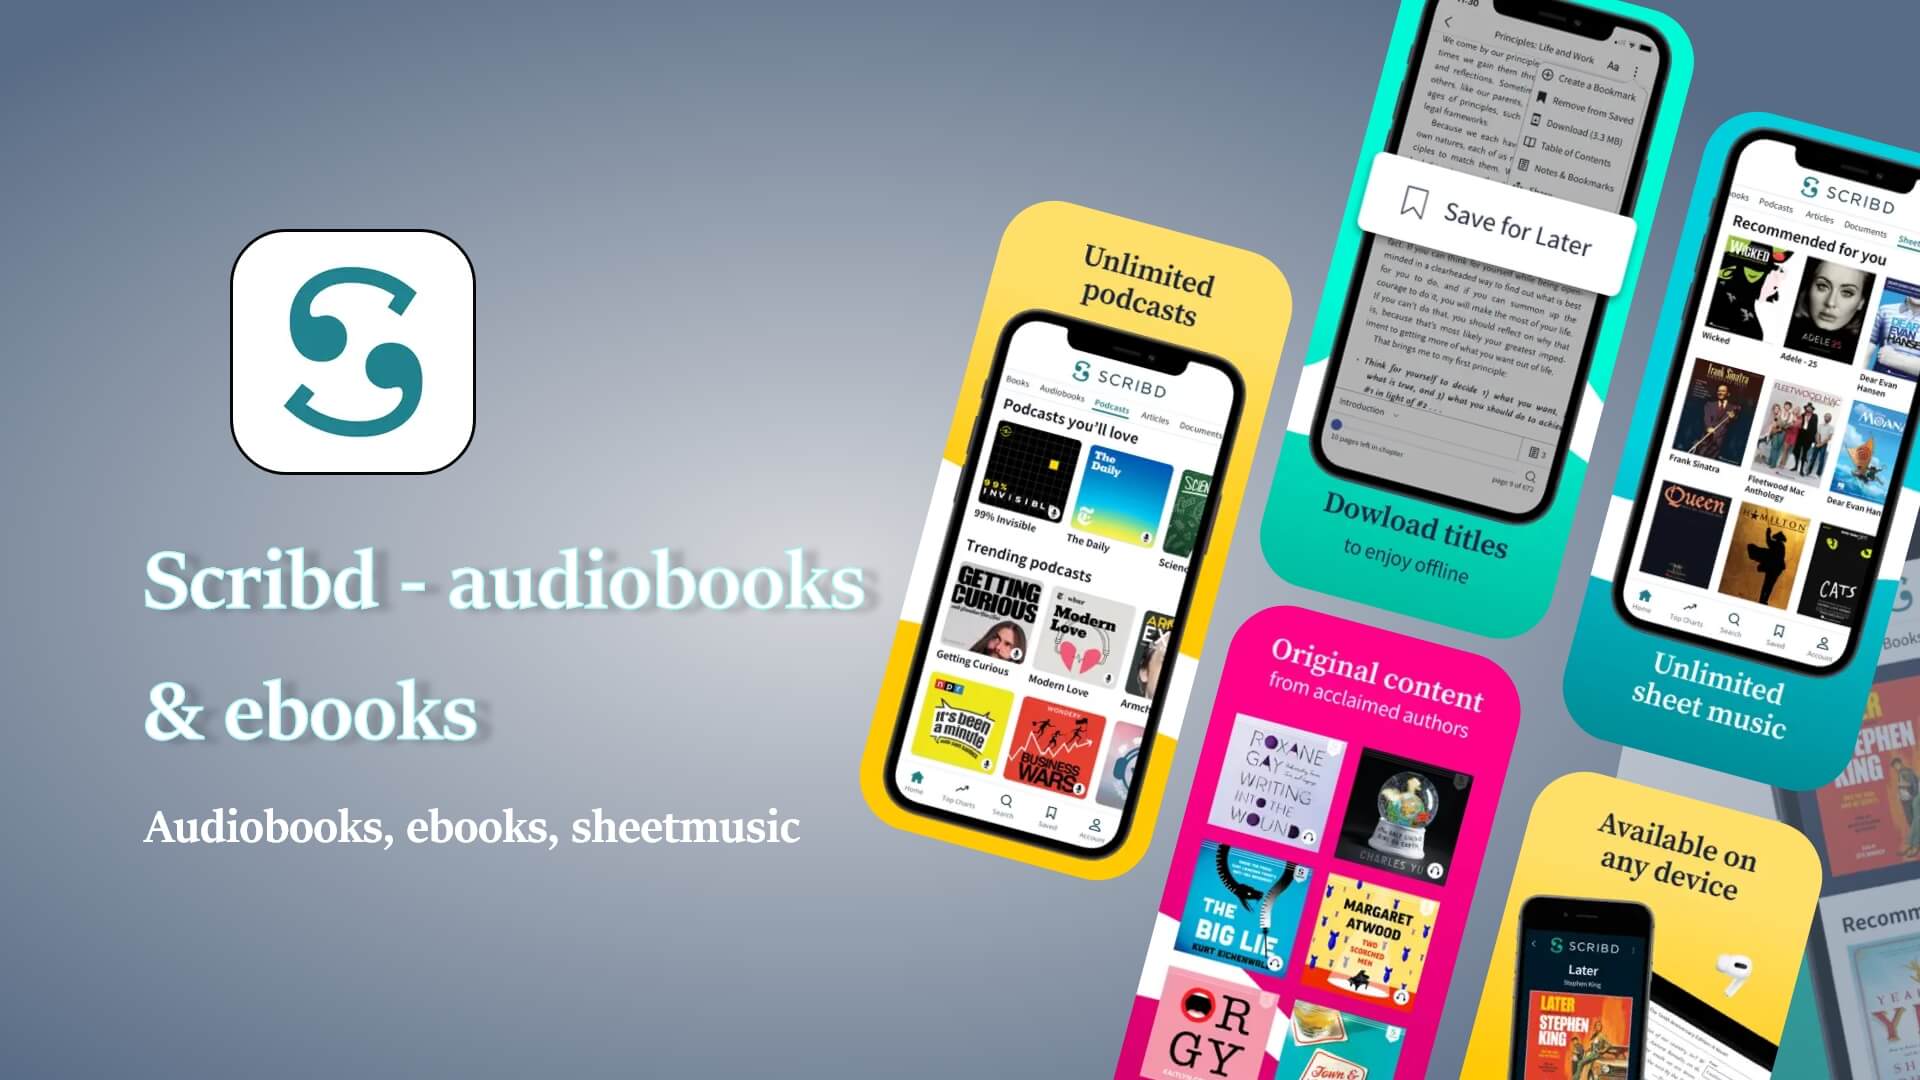 Scribd - audiobooks & ebooks